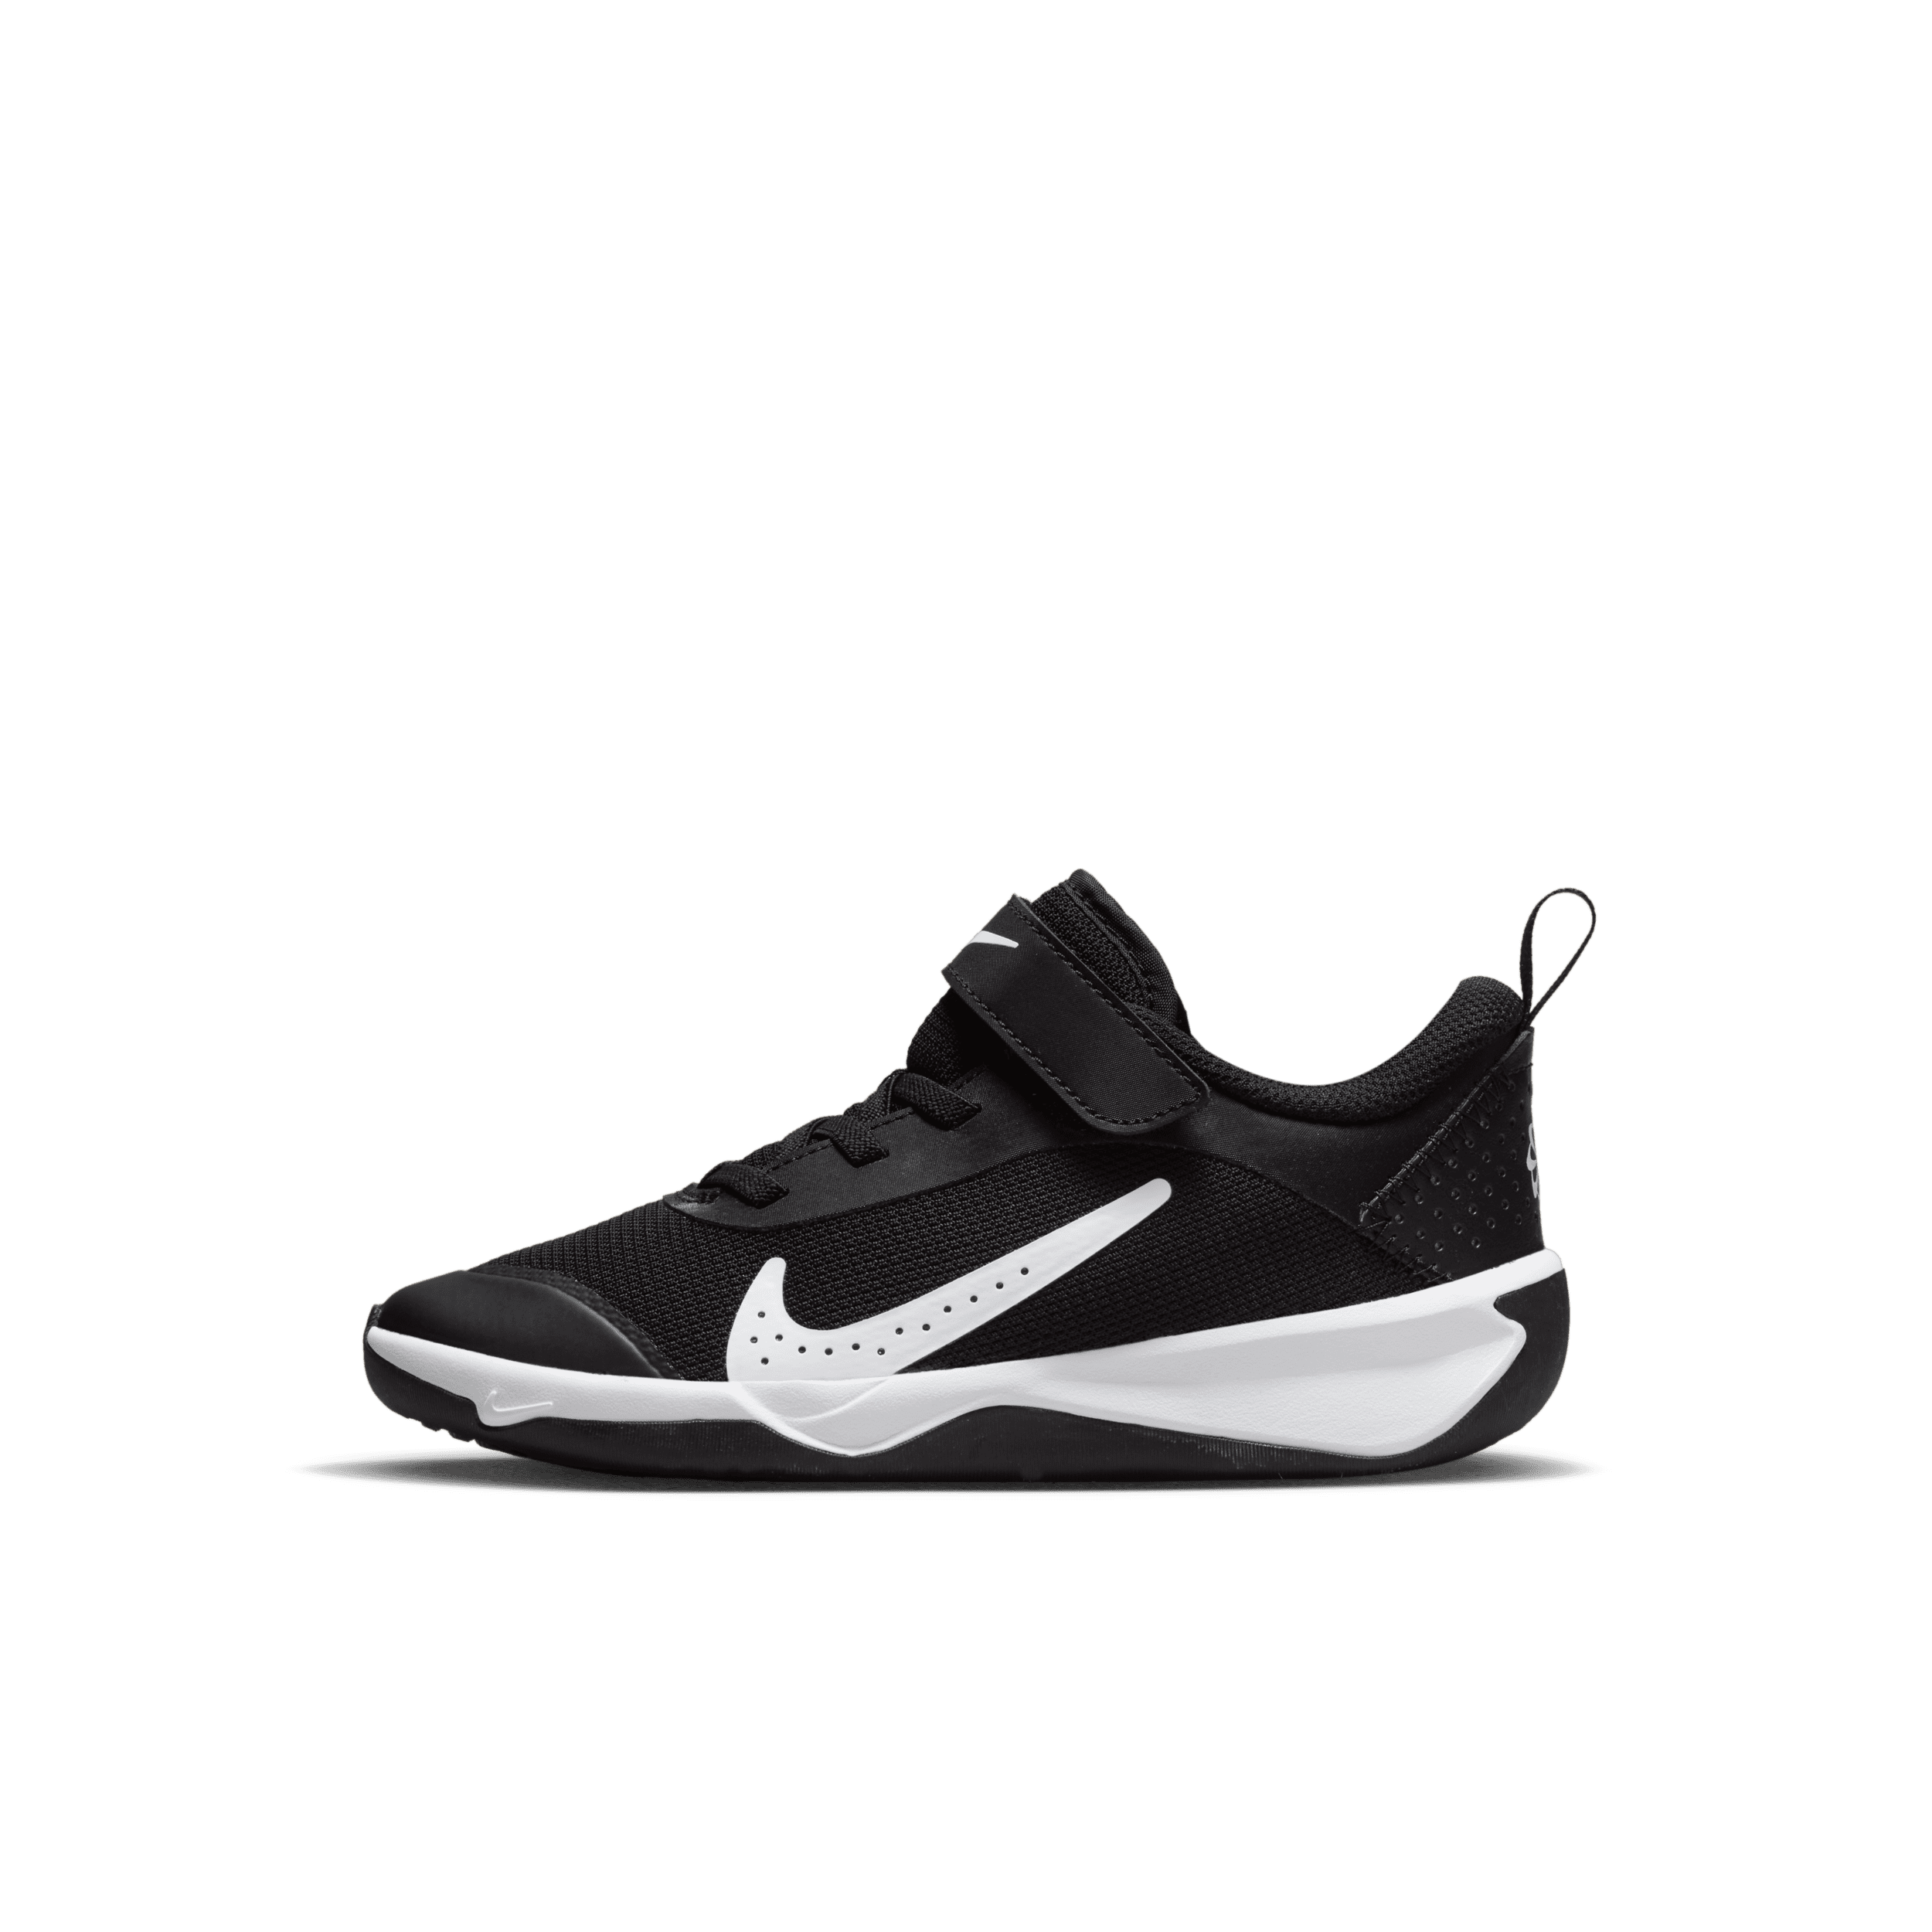 Nike Omni Multi-Court Kleuterschoenen - Zwart